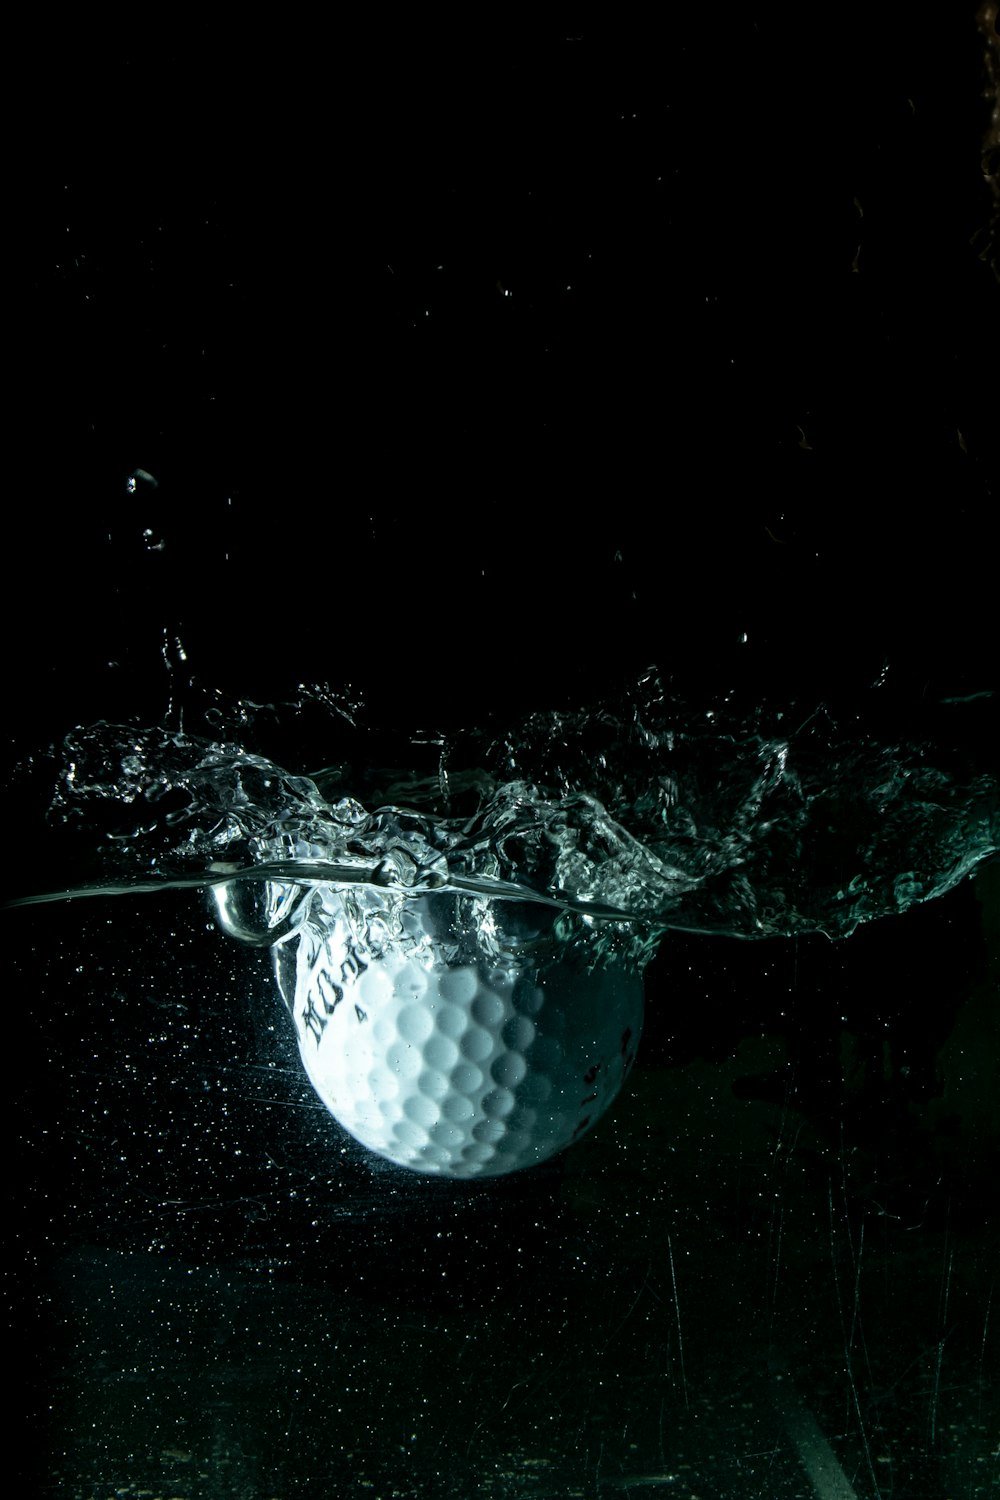 pelota de golf blanca en el agua